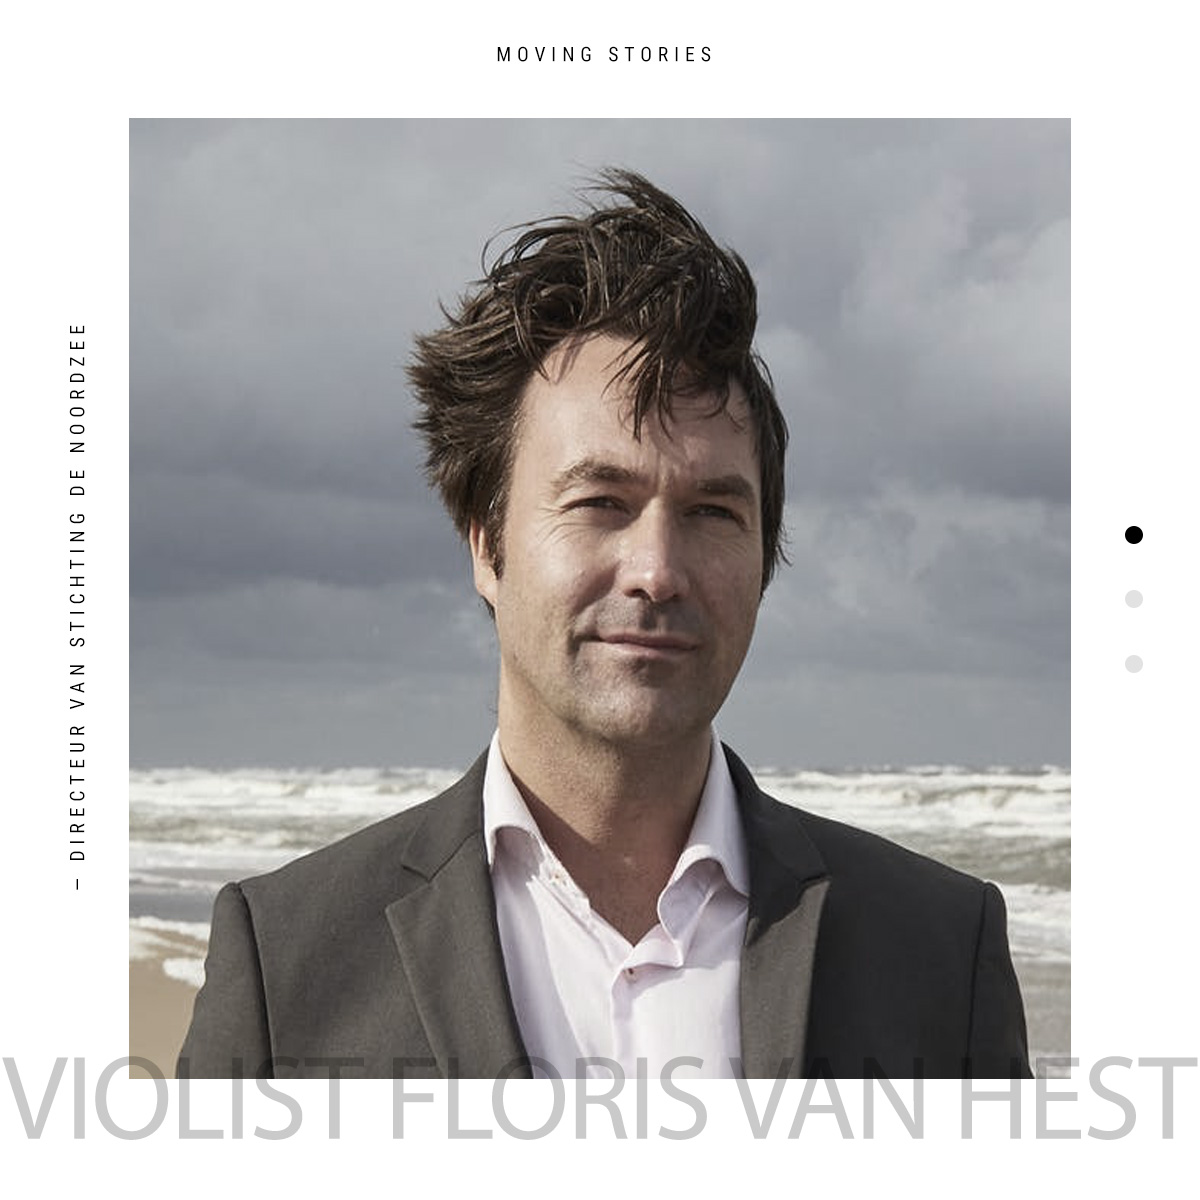 Moving Story - Floris van Hest